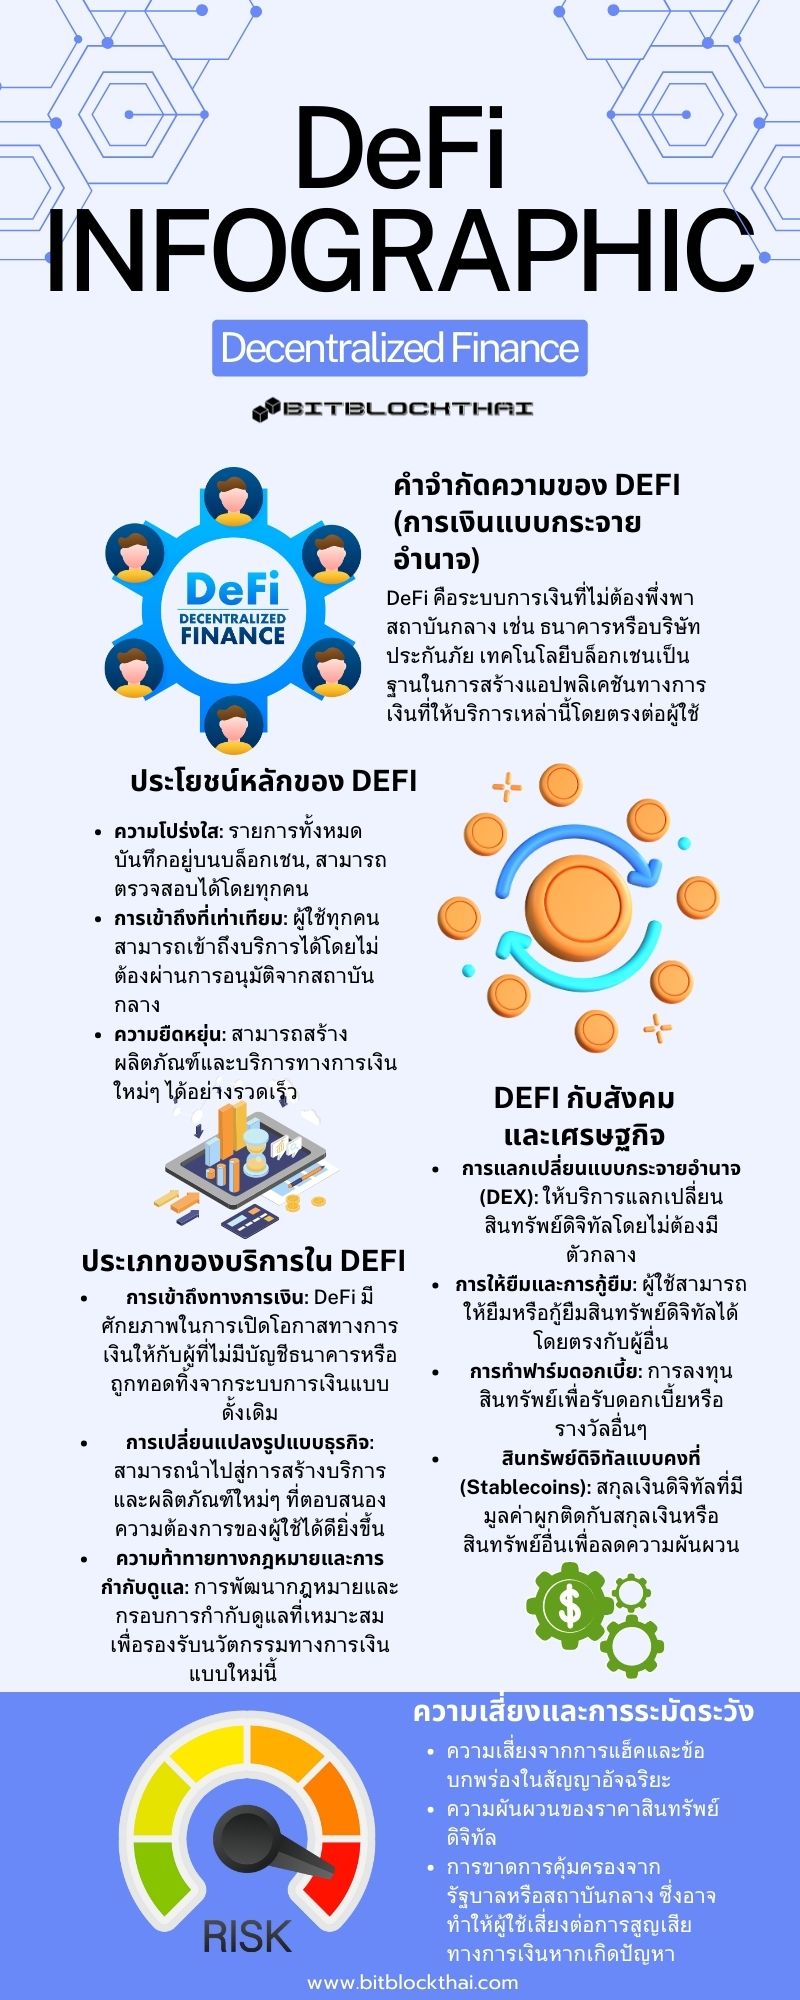 อินโฟกราฟฟิกอธิบายถึง defi infographic thai